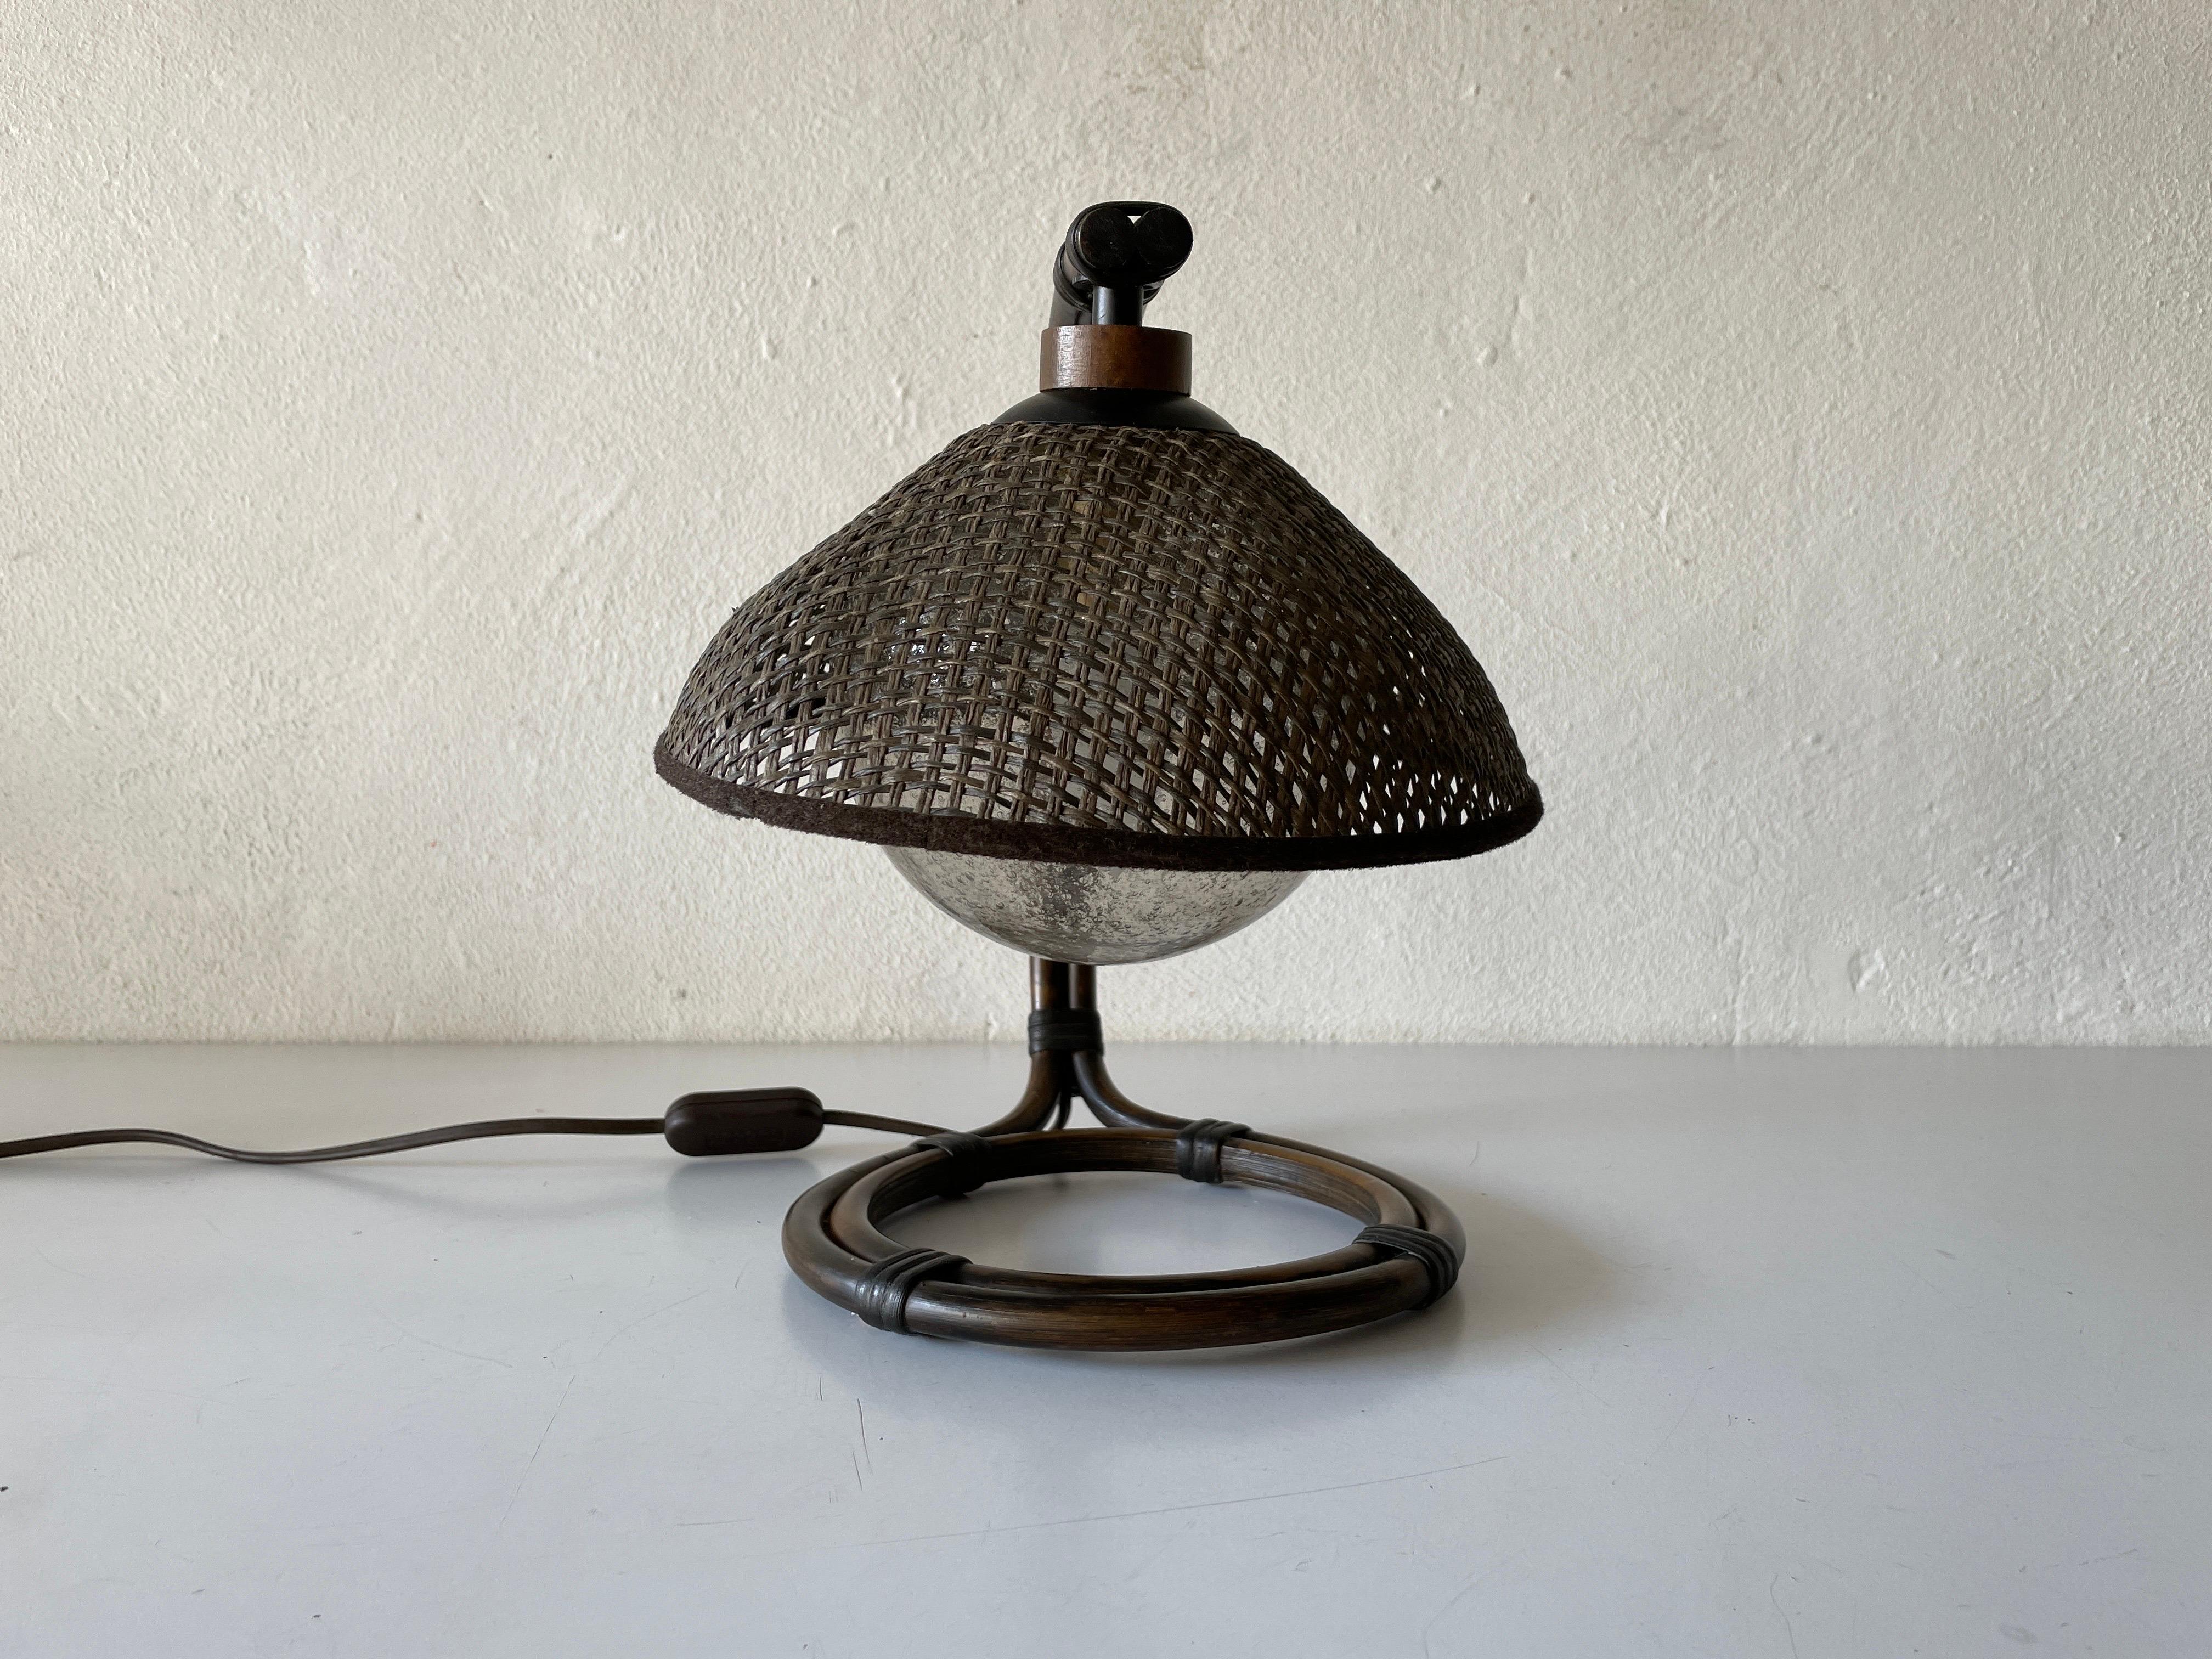 Rare lampe de chevet en bambou et osier avec verre à bulles d'air par Temde, années 1960, Suisse

L'abat-jour est en bon état et très propre. 
Cette lampe fonctionne avec une ampoule E27
Câblé et adapté à une utilisation avec 220V et 110V pour tous